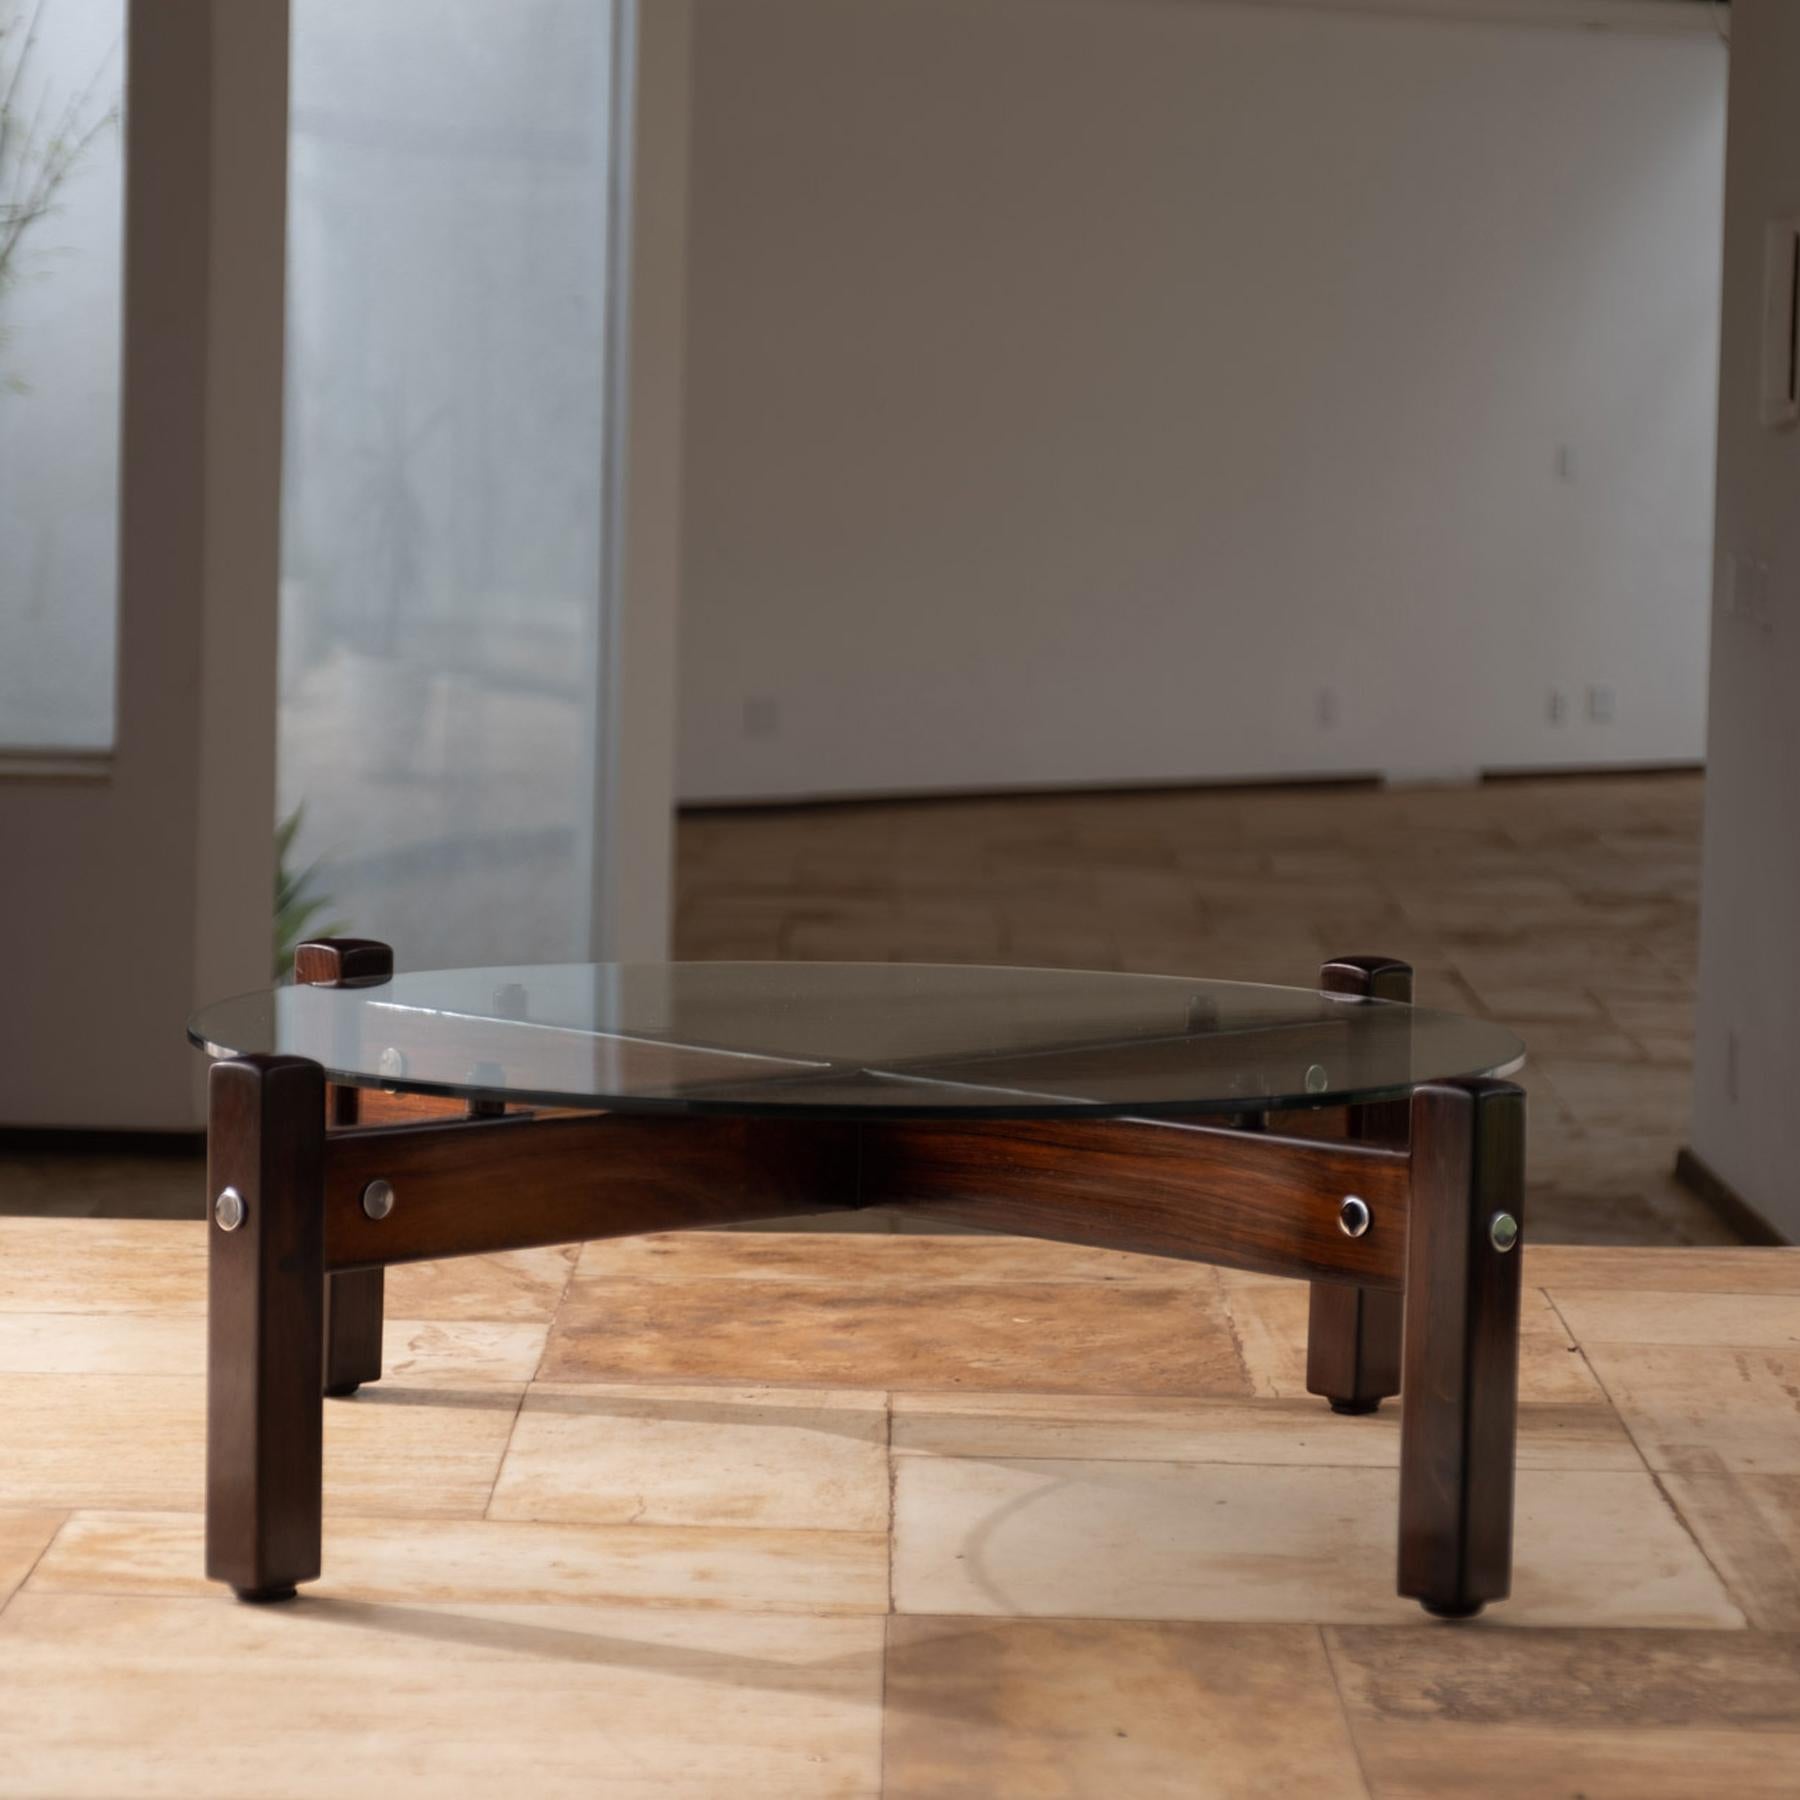 Étonnante table basse Latini conçue par Sergio Rodrigues et produite par Oca, au Brésil, dans les années 1960.
Base en palissandre massif avec détails chromés et plateau en verre.
Cet article a été restauré

Sergio Rodrigues (1927-2014), Rio de